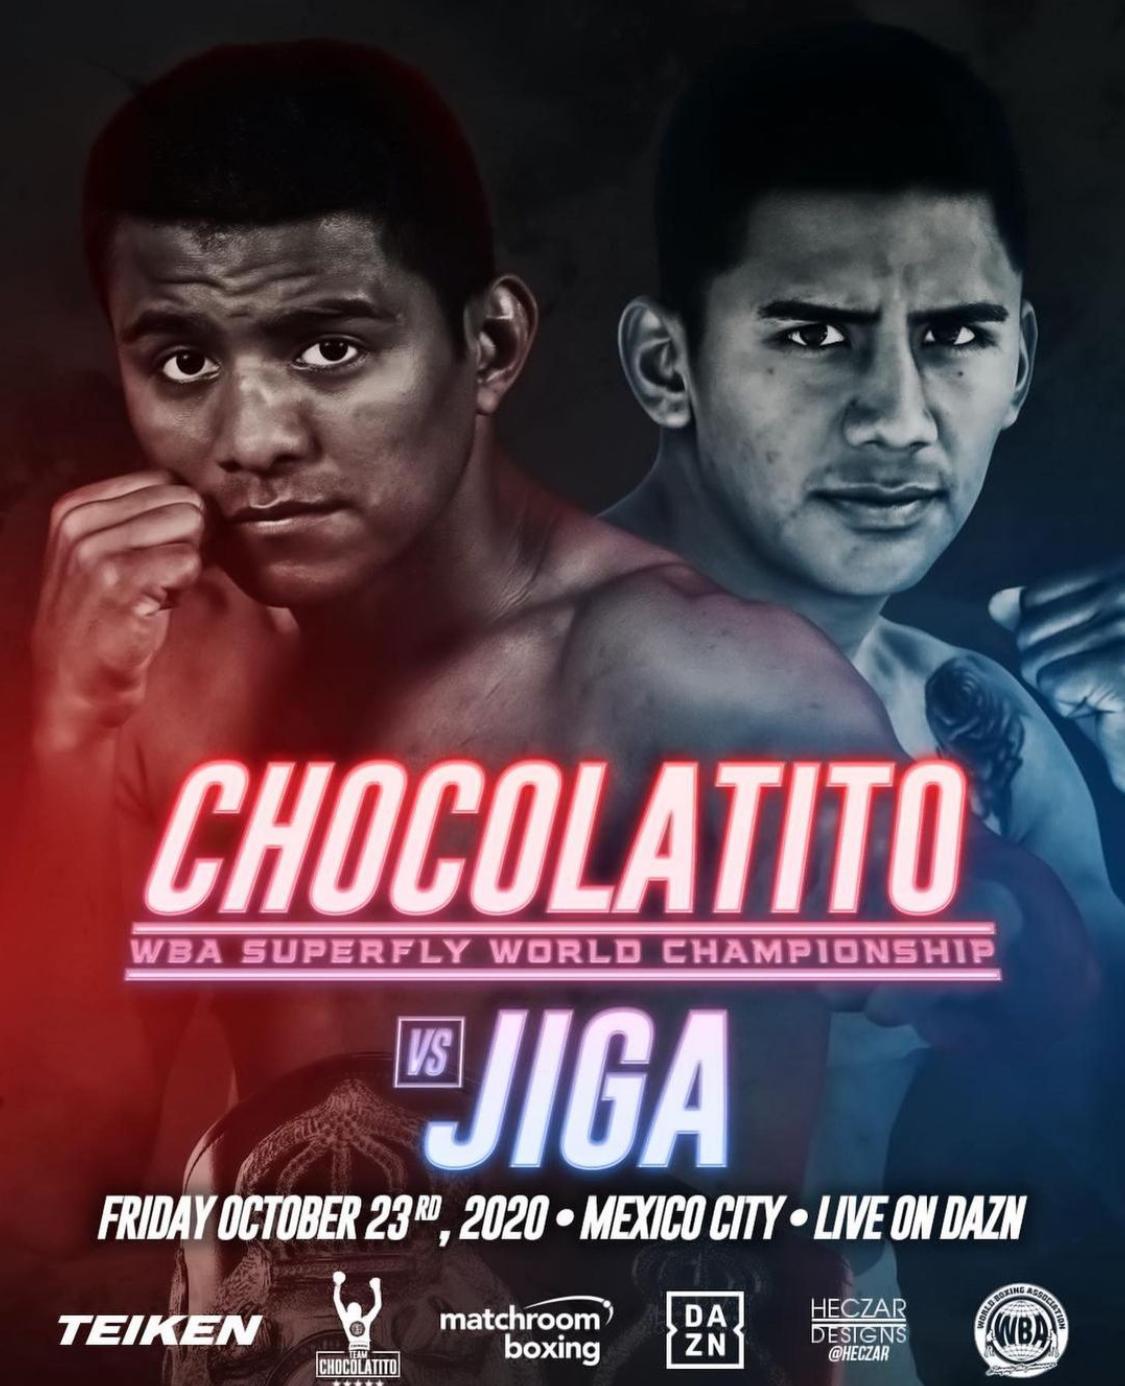 Román 'Chocolatito' González vs Israel 'Jiga' González (WBA)